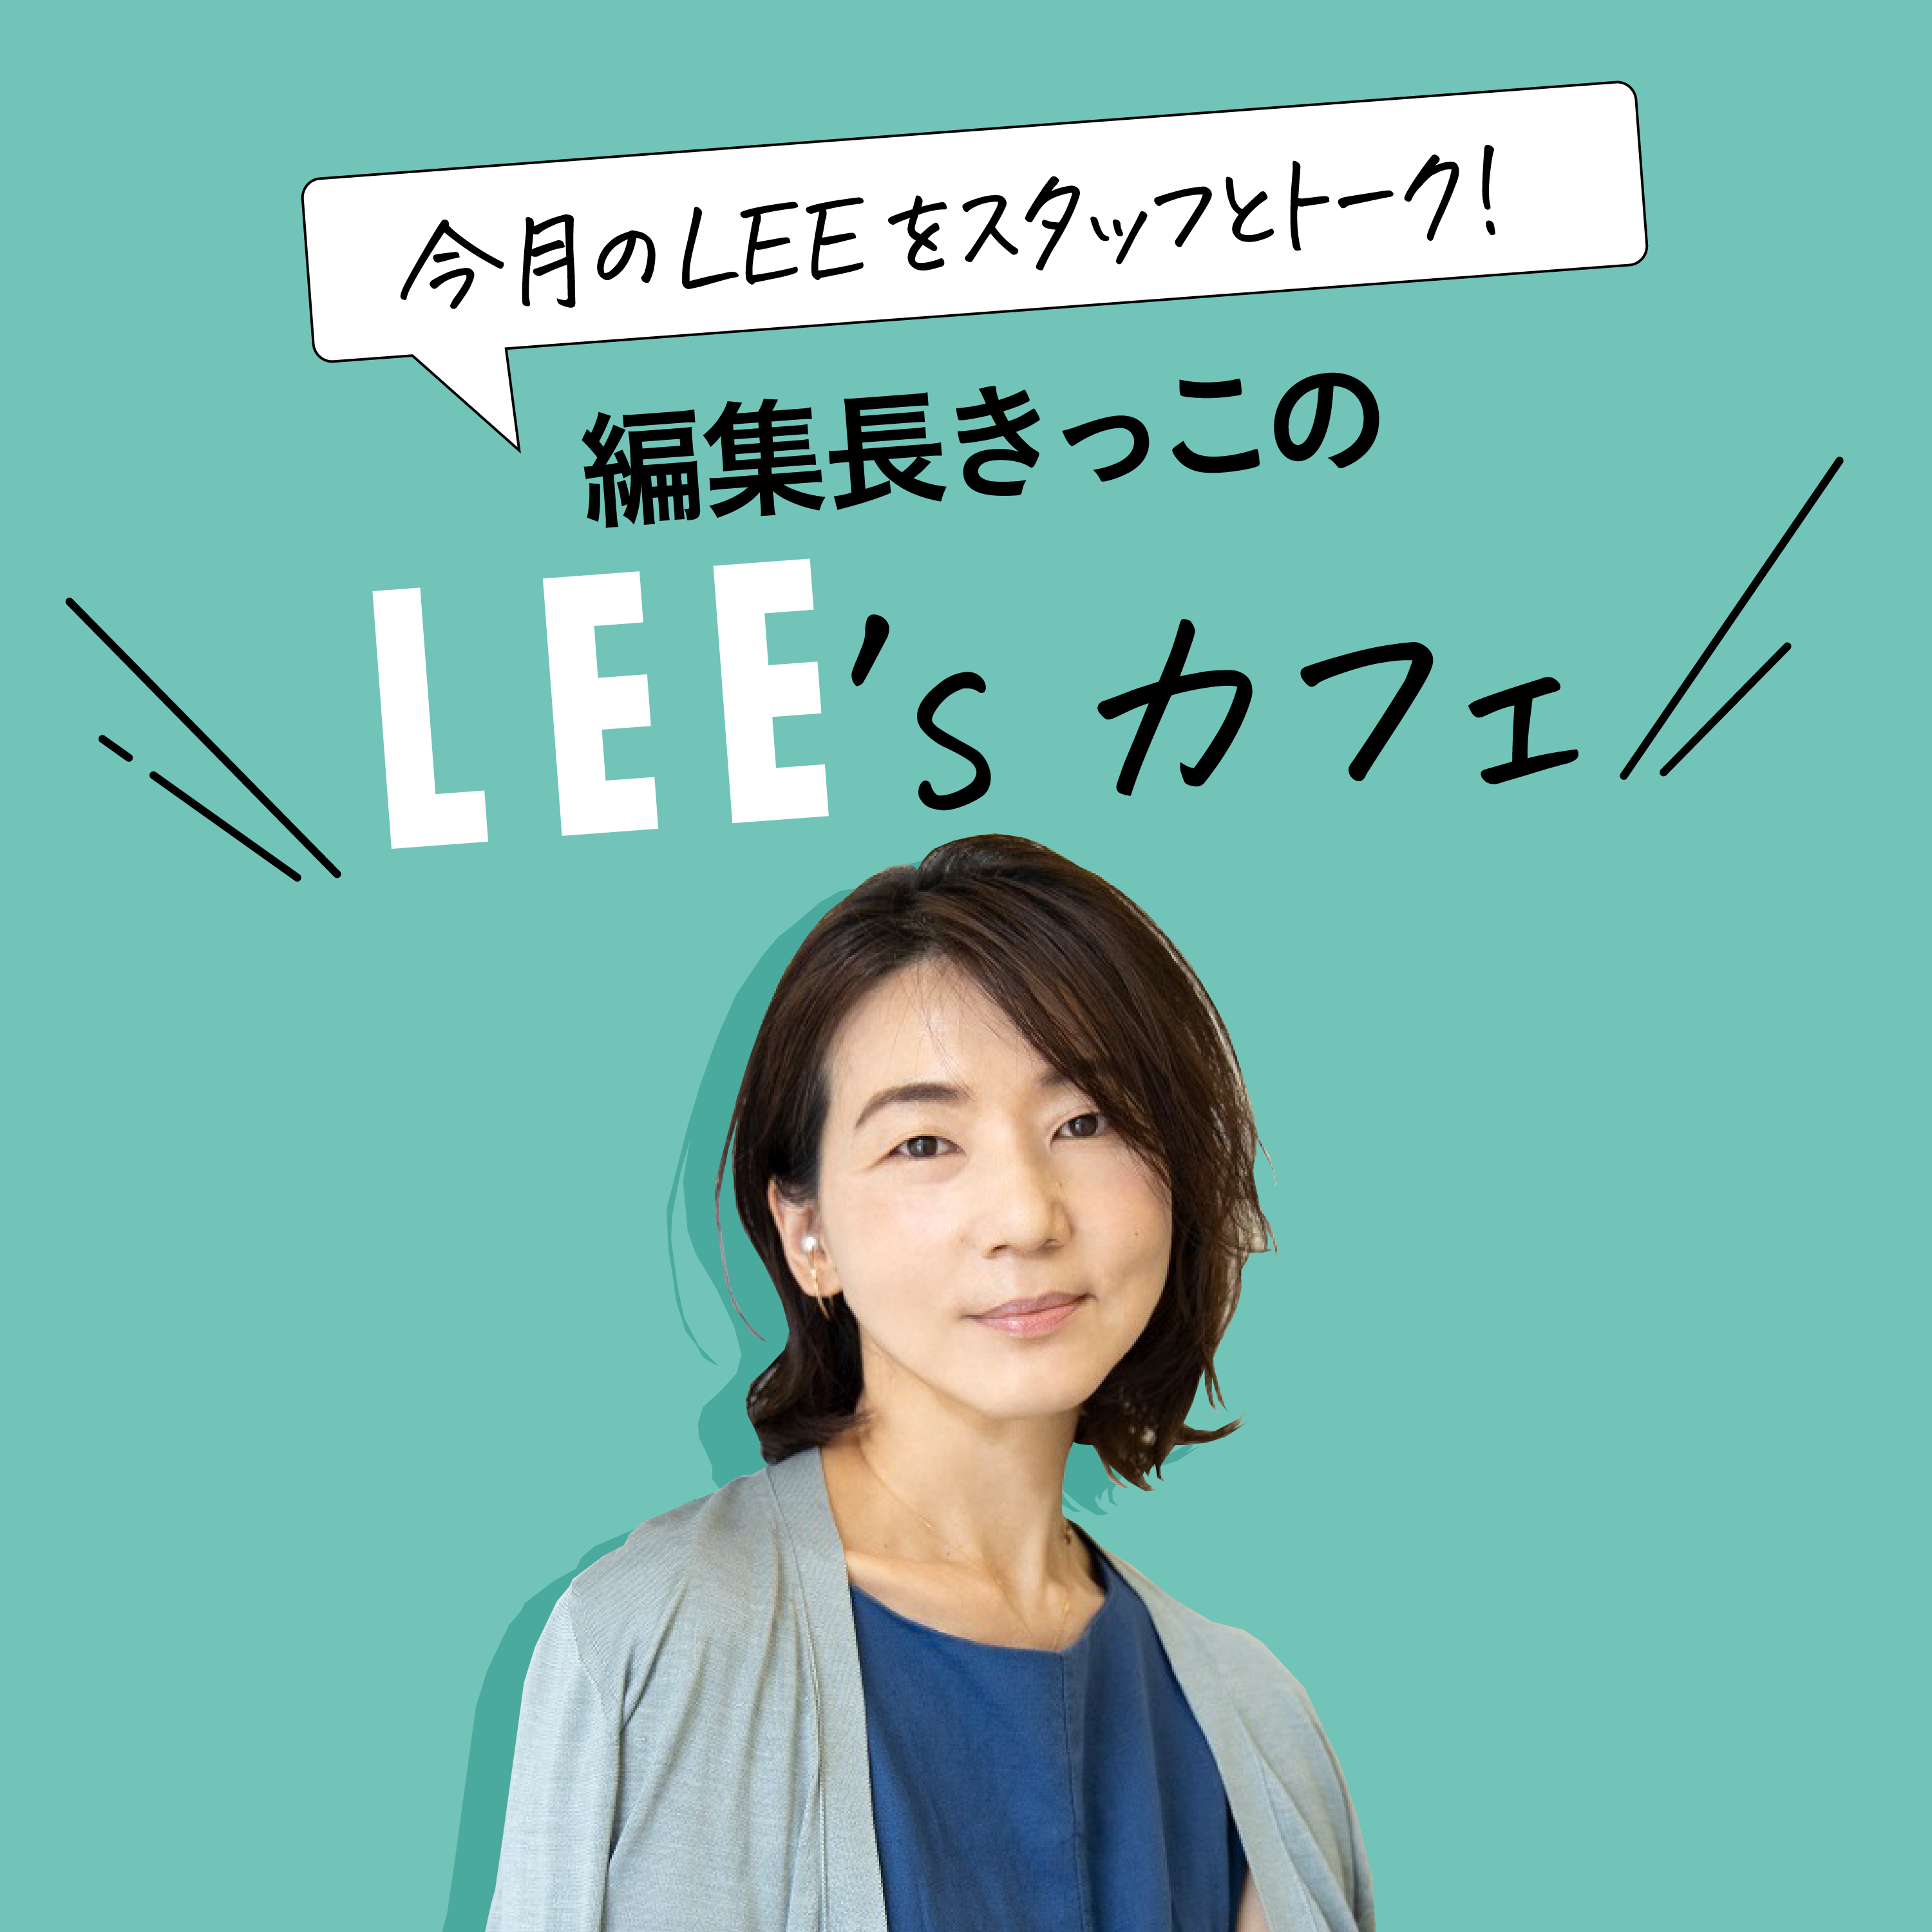 #27 LEEwebで大人気料理家、榎本美沙さんがこの冬作りたいおやつ